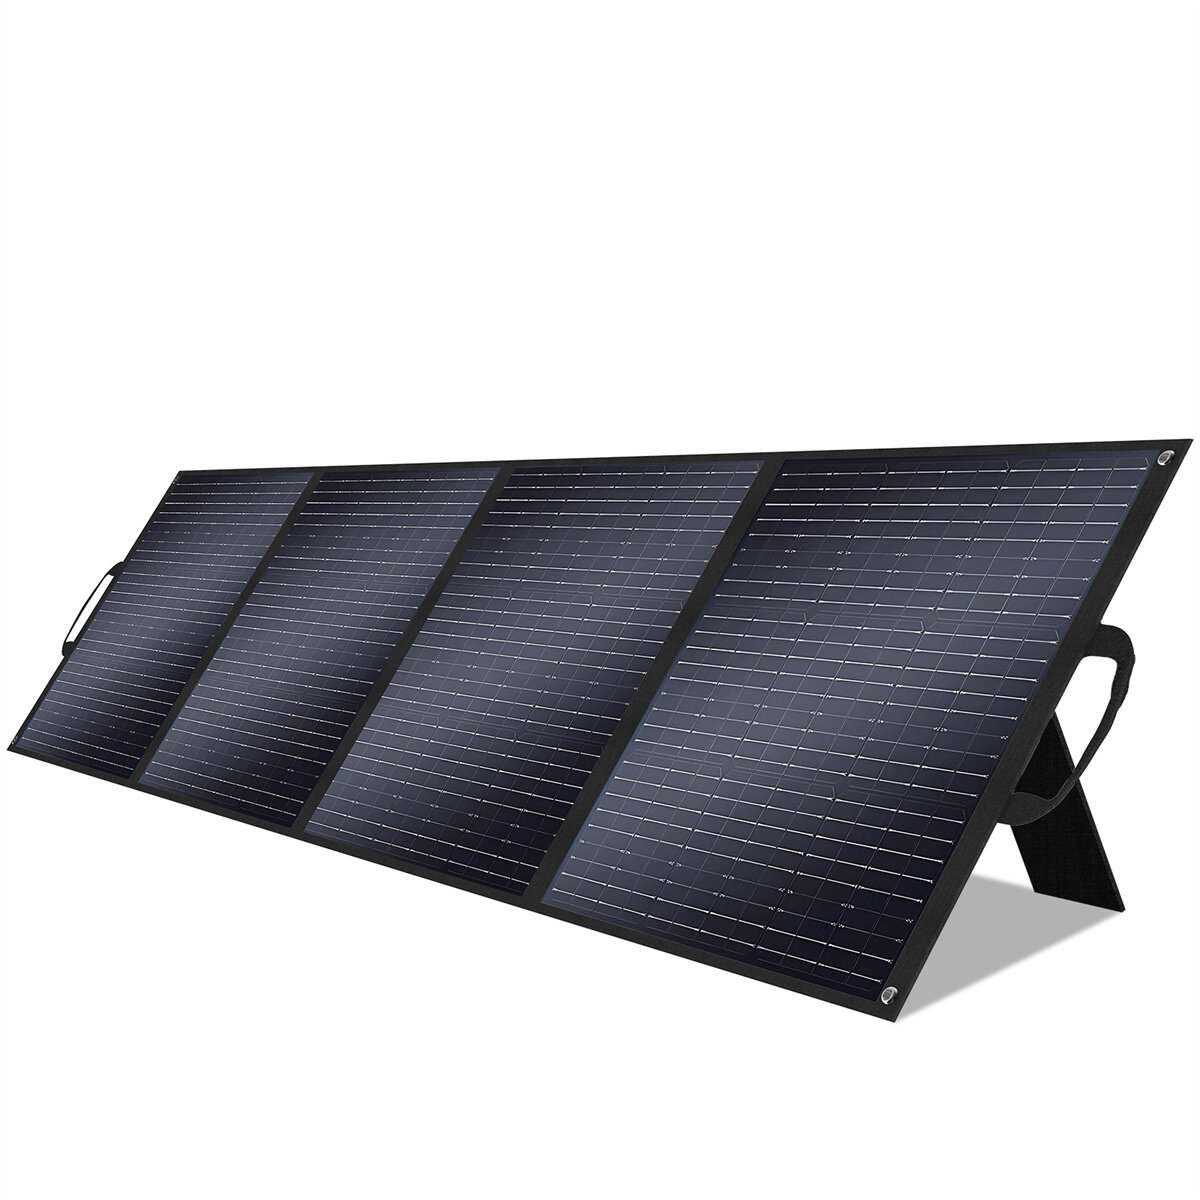 [EU Direct] 1Pc VLAIAN S200 200W Panel Solar ETFE 23.4% Eficiencia Panel Solar Plegable Portátil para Patio, Autocaravana, Camping al Aire Libre, Apagón, Emergencia